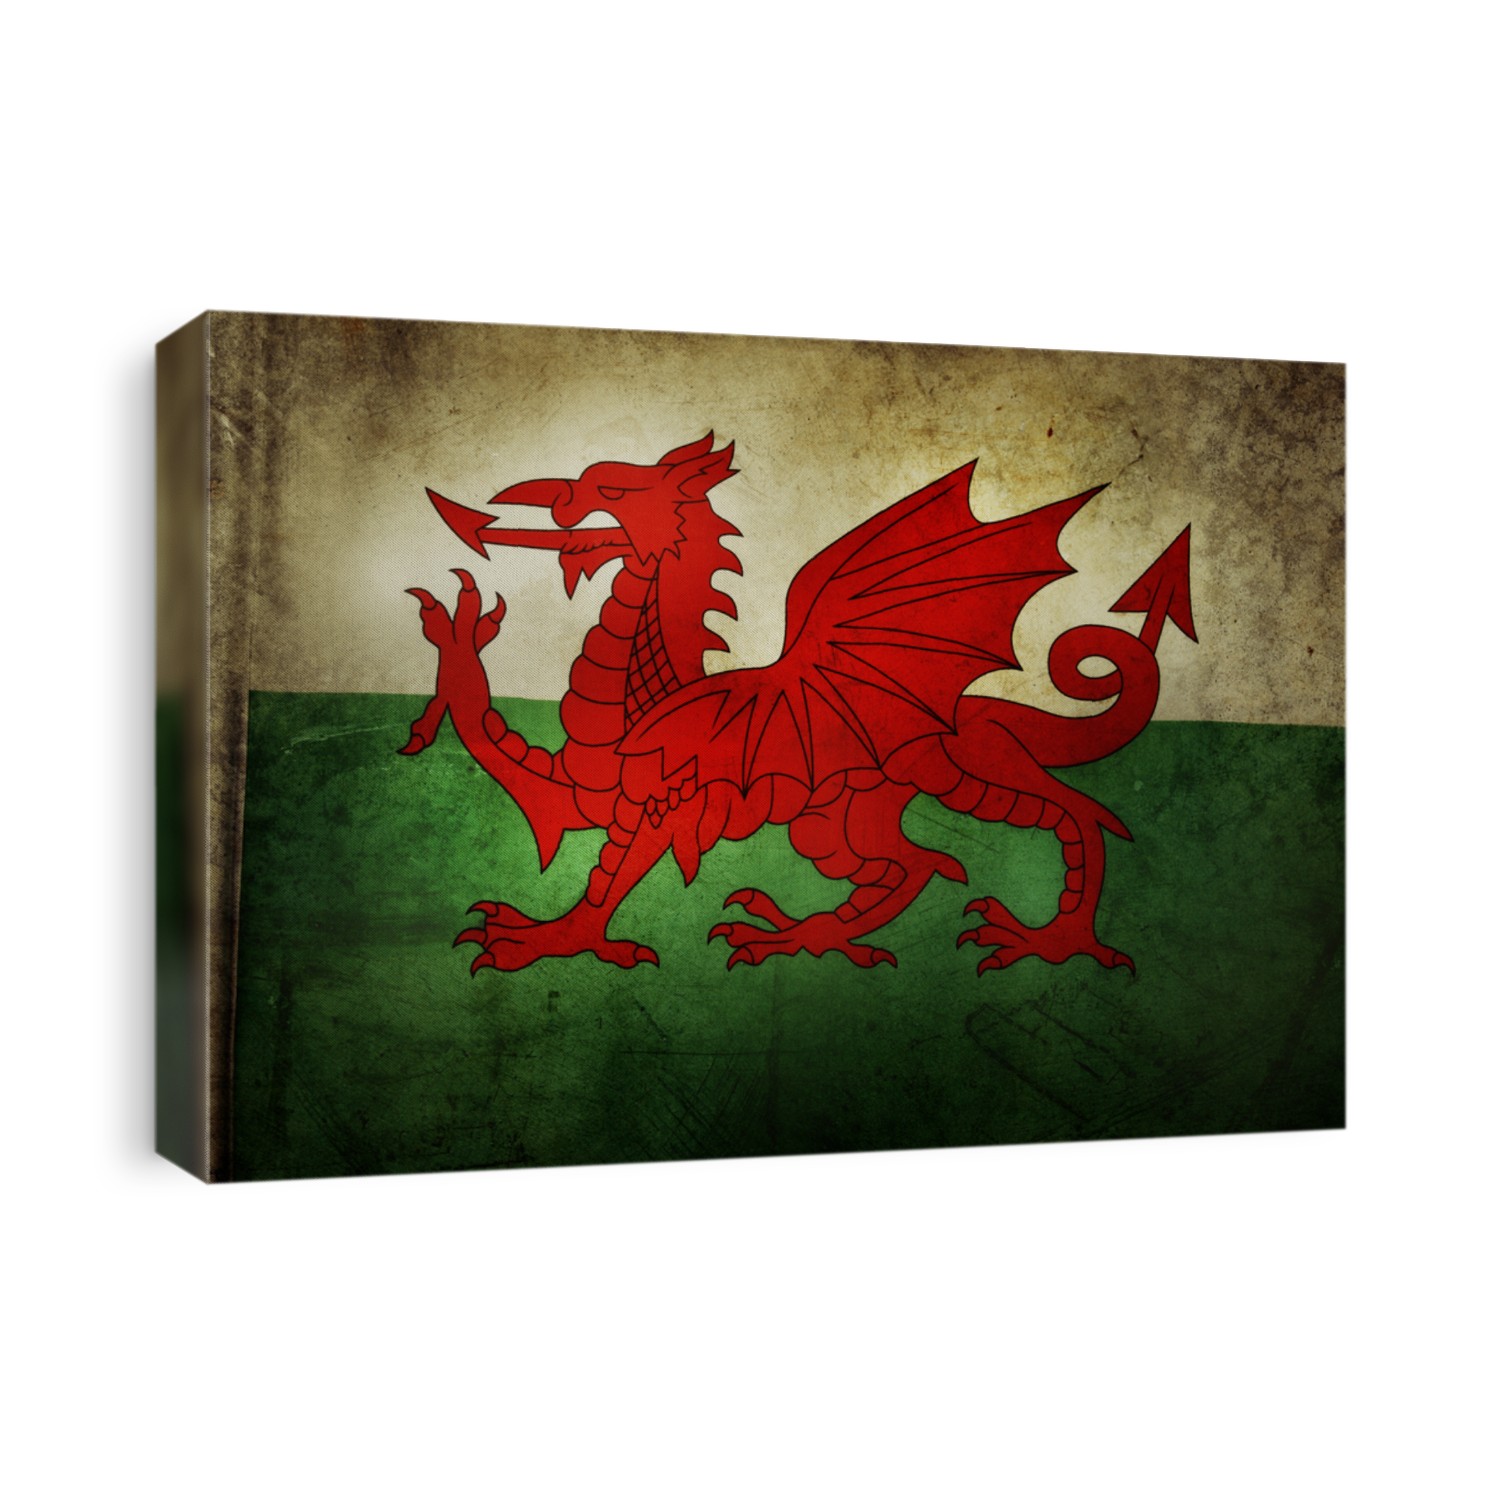 Welsh flag. Grunge effect